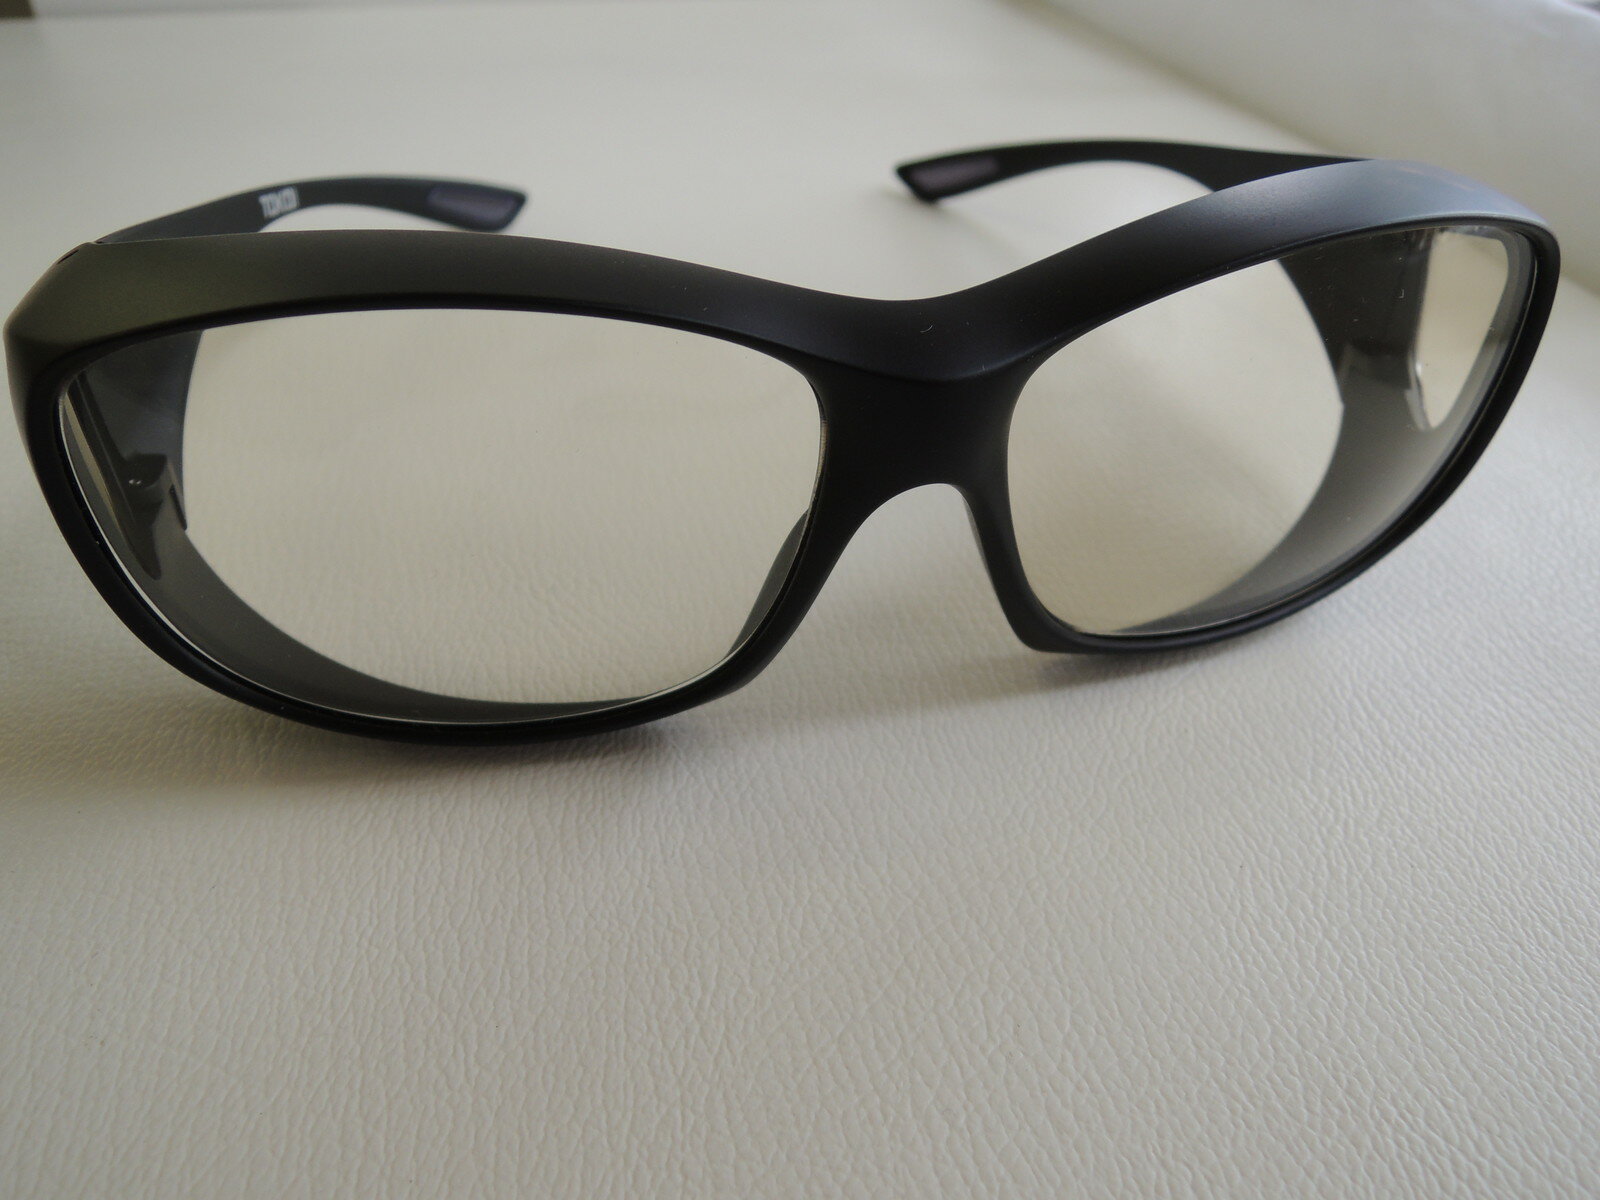 【送料無料】遮光眼鏡オーバーグラス メガネの上から掛けることができます。紫外線、花粉からあなたの目をまもります!